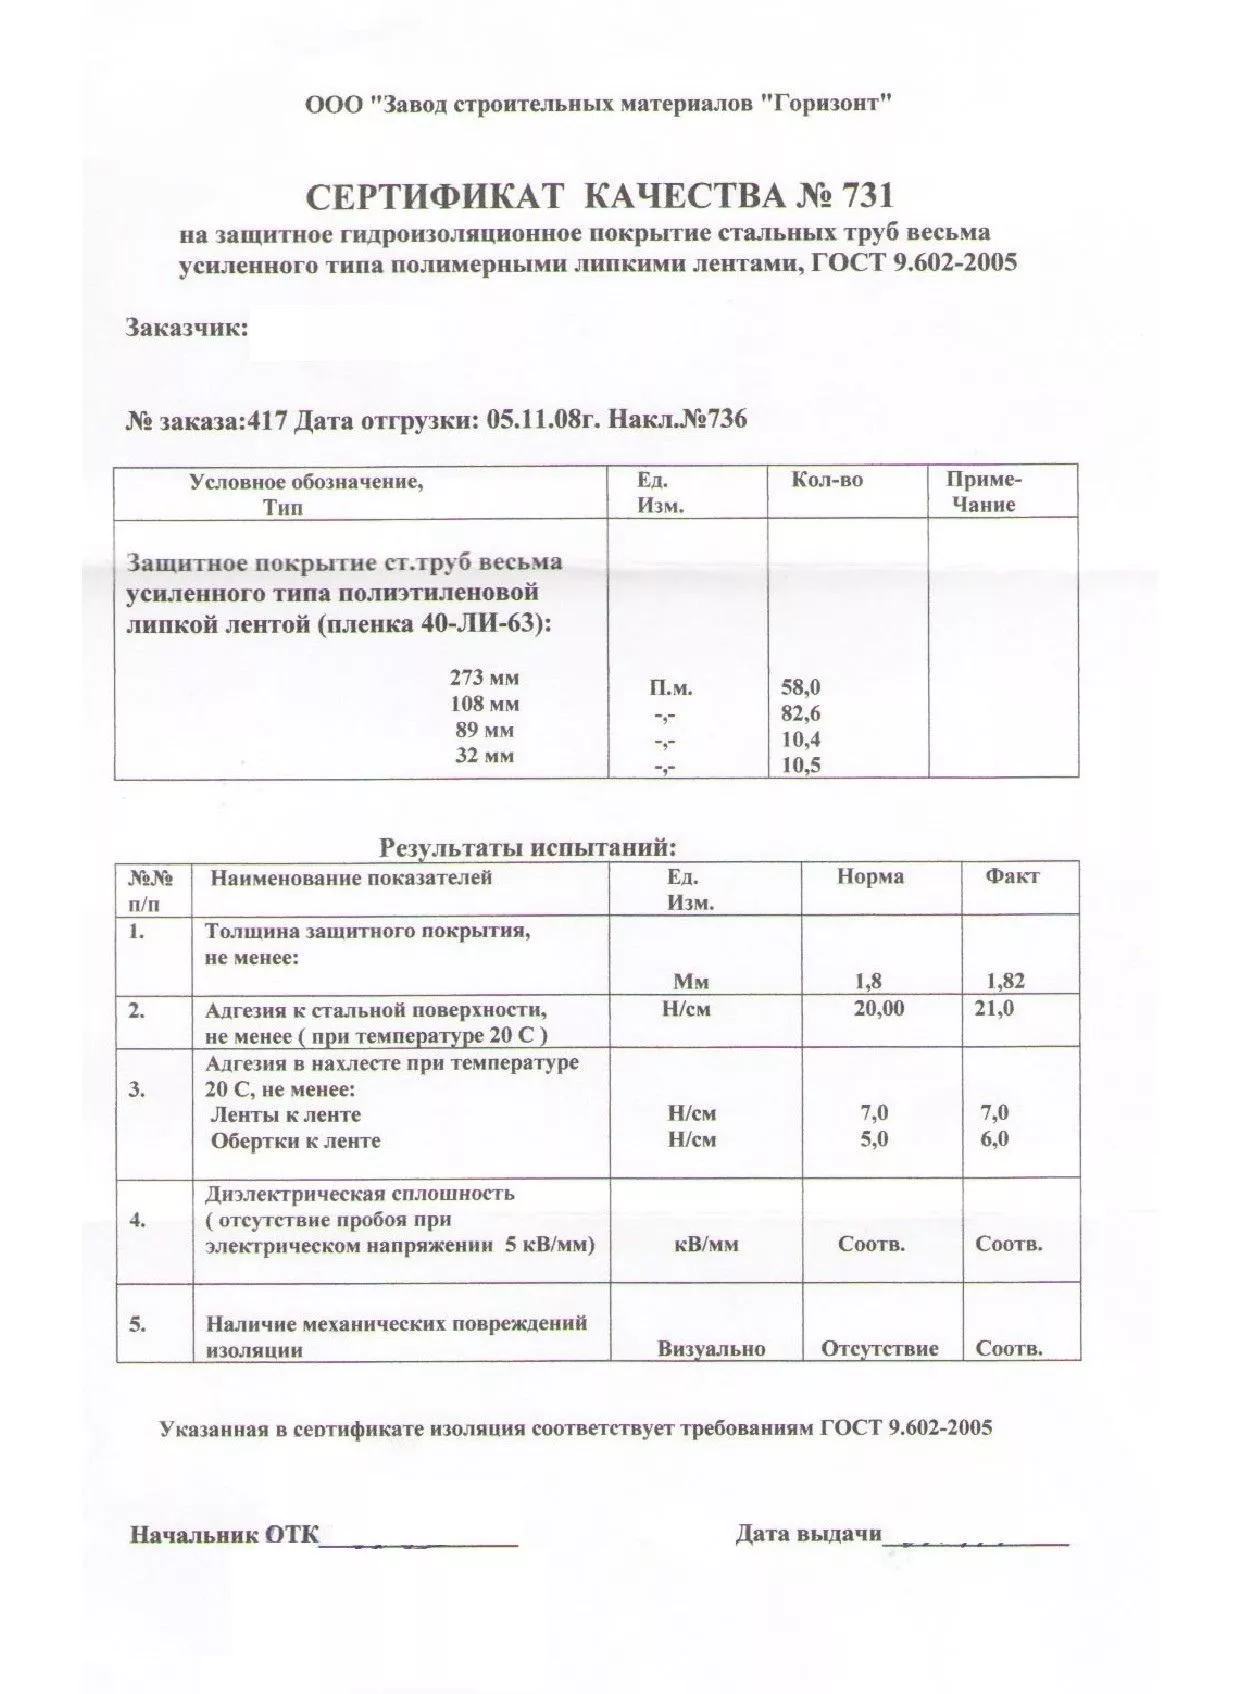 Сертификат качества на защитное гидроизоляционное покрытие для труб от 11-08